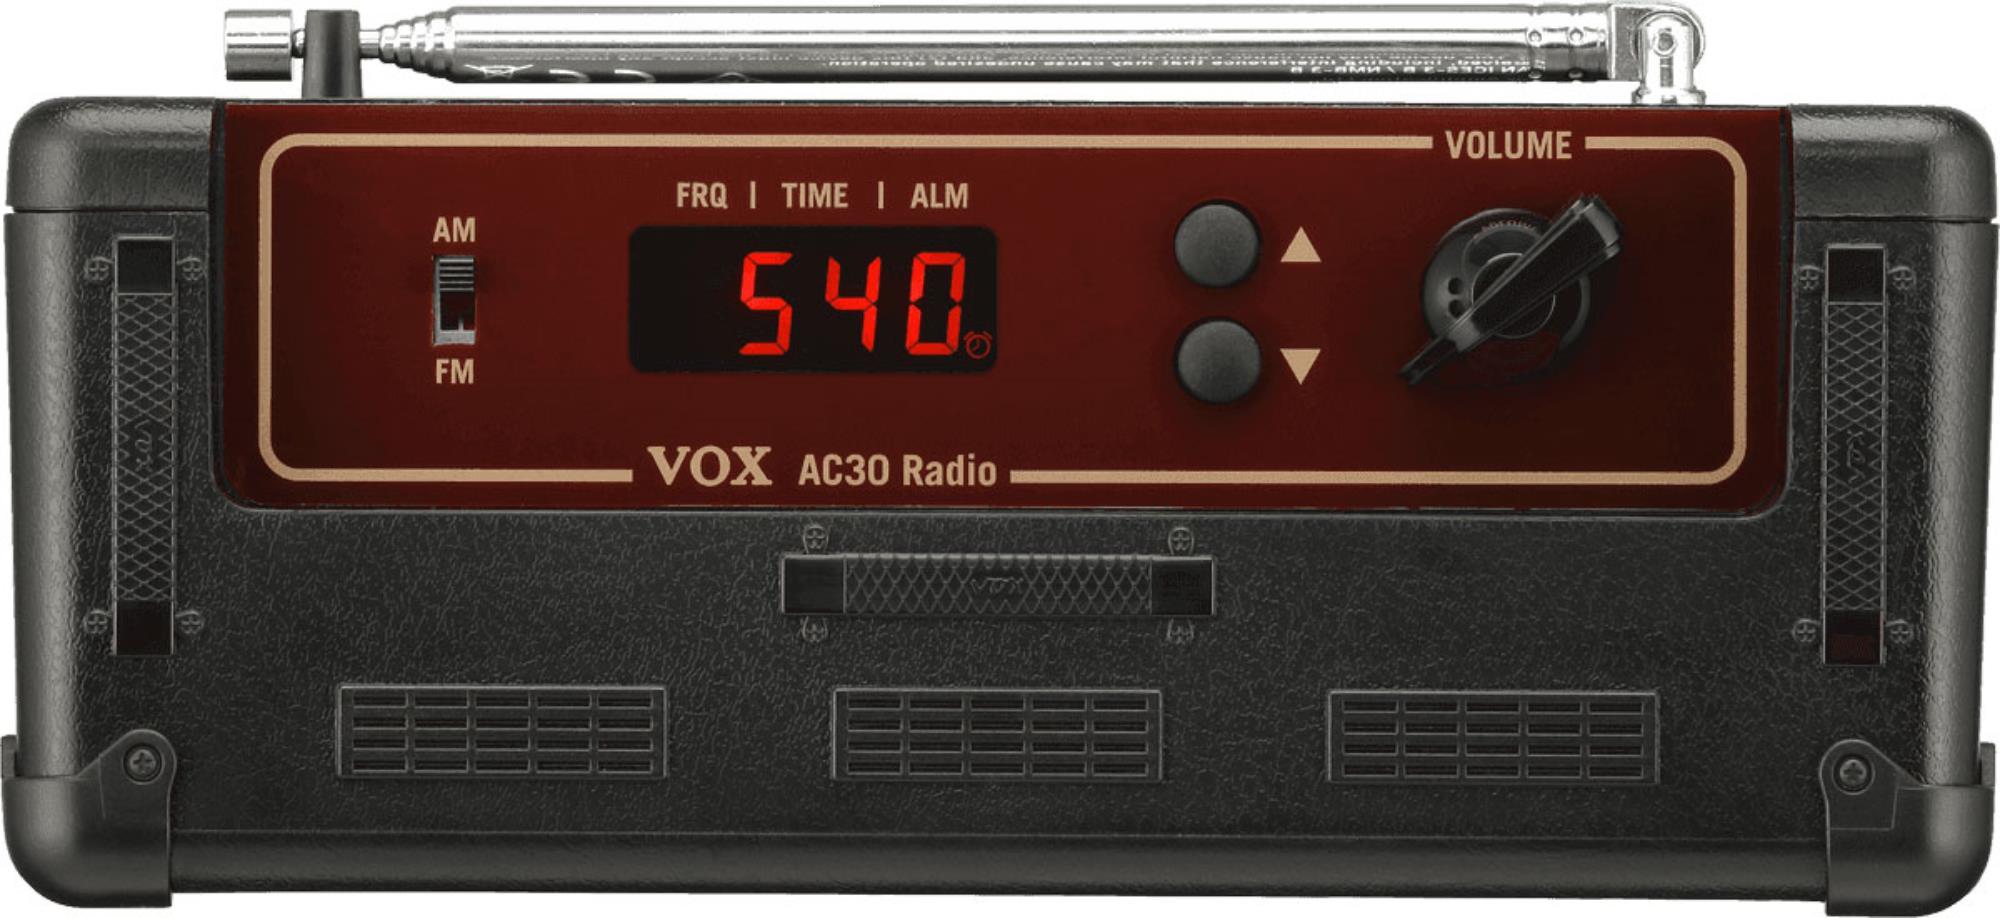 VOX AC30 RADIO FM